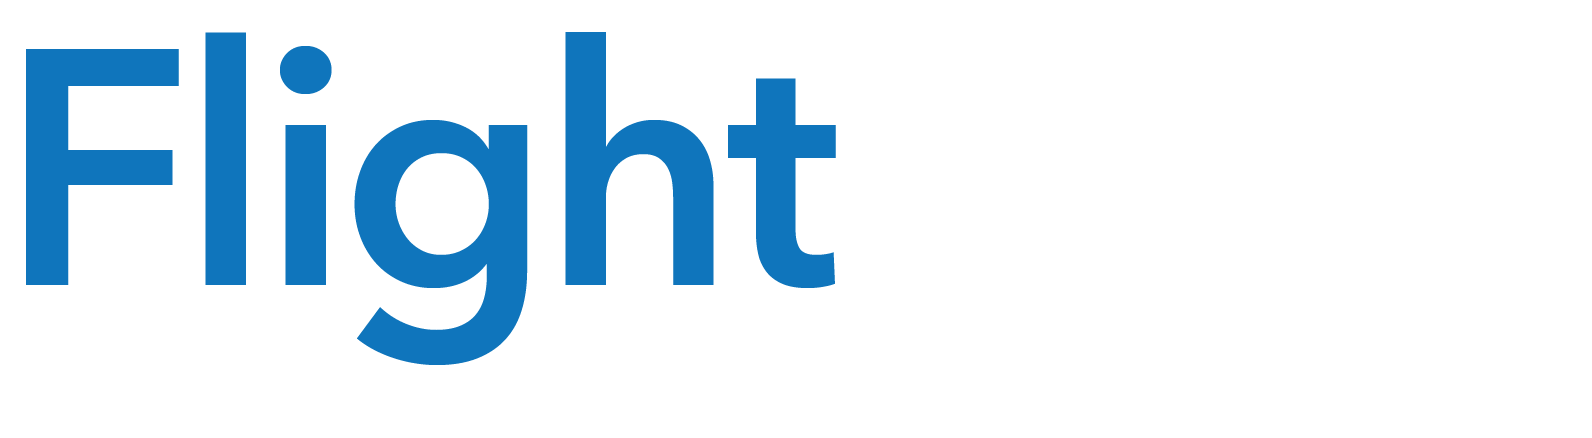 Flight Deck Logo